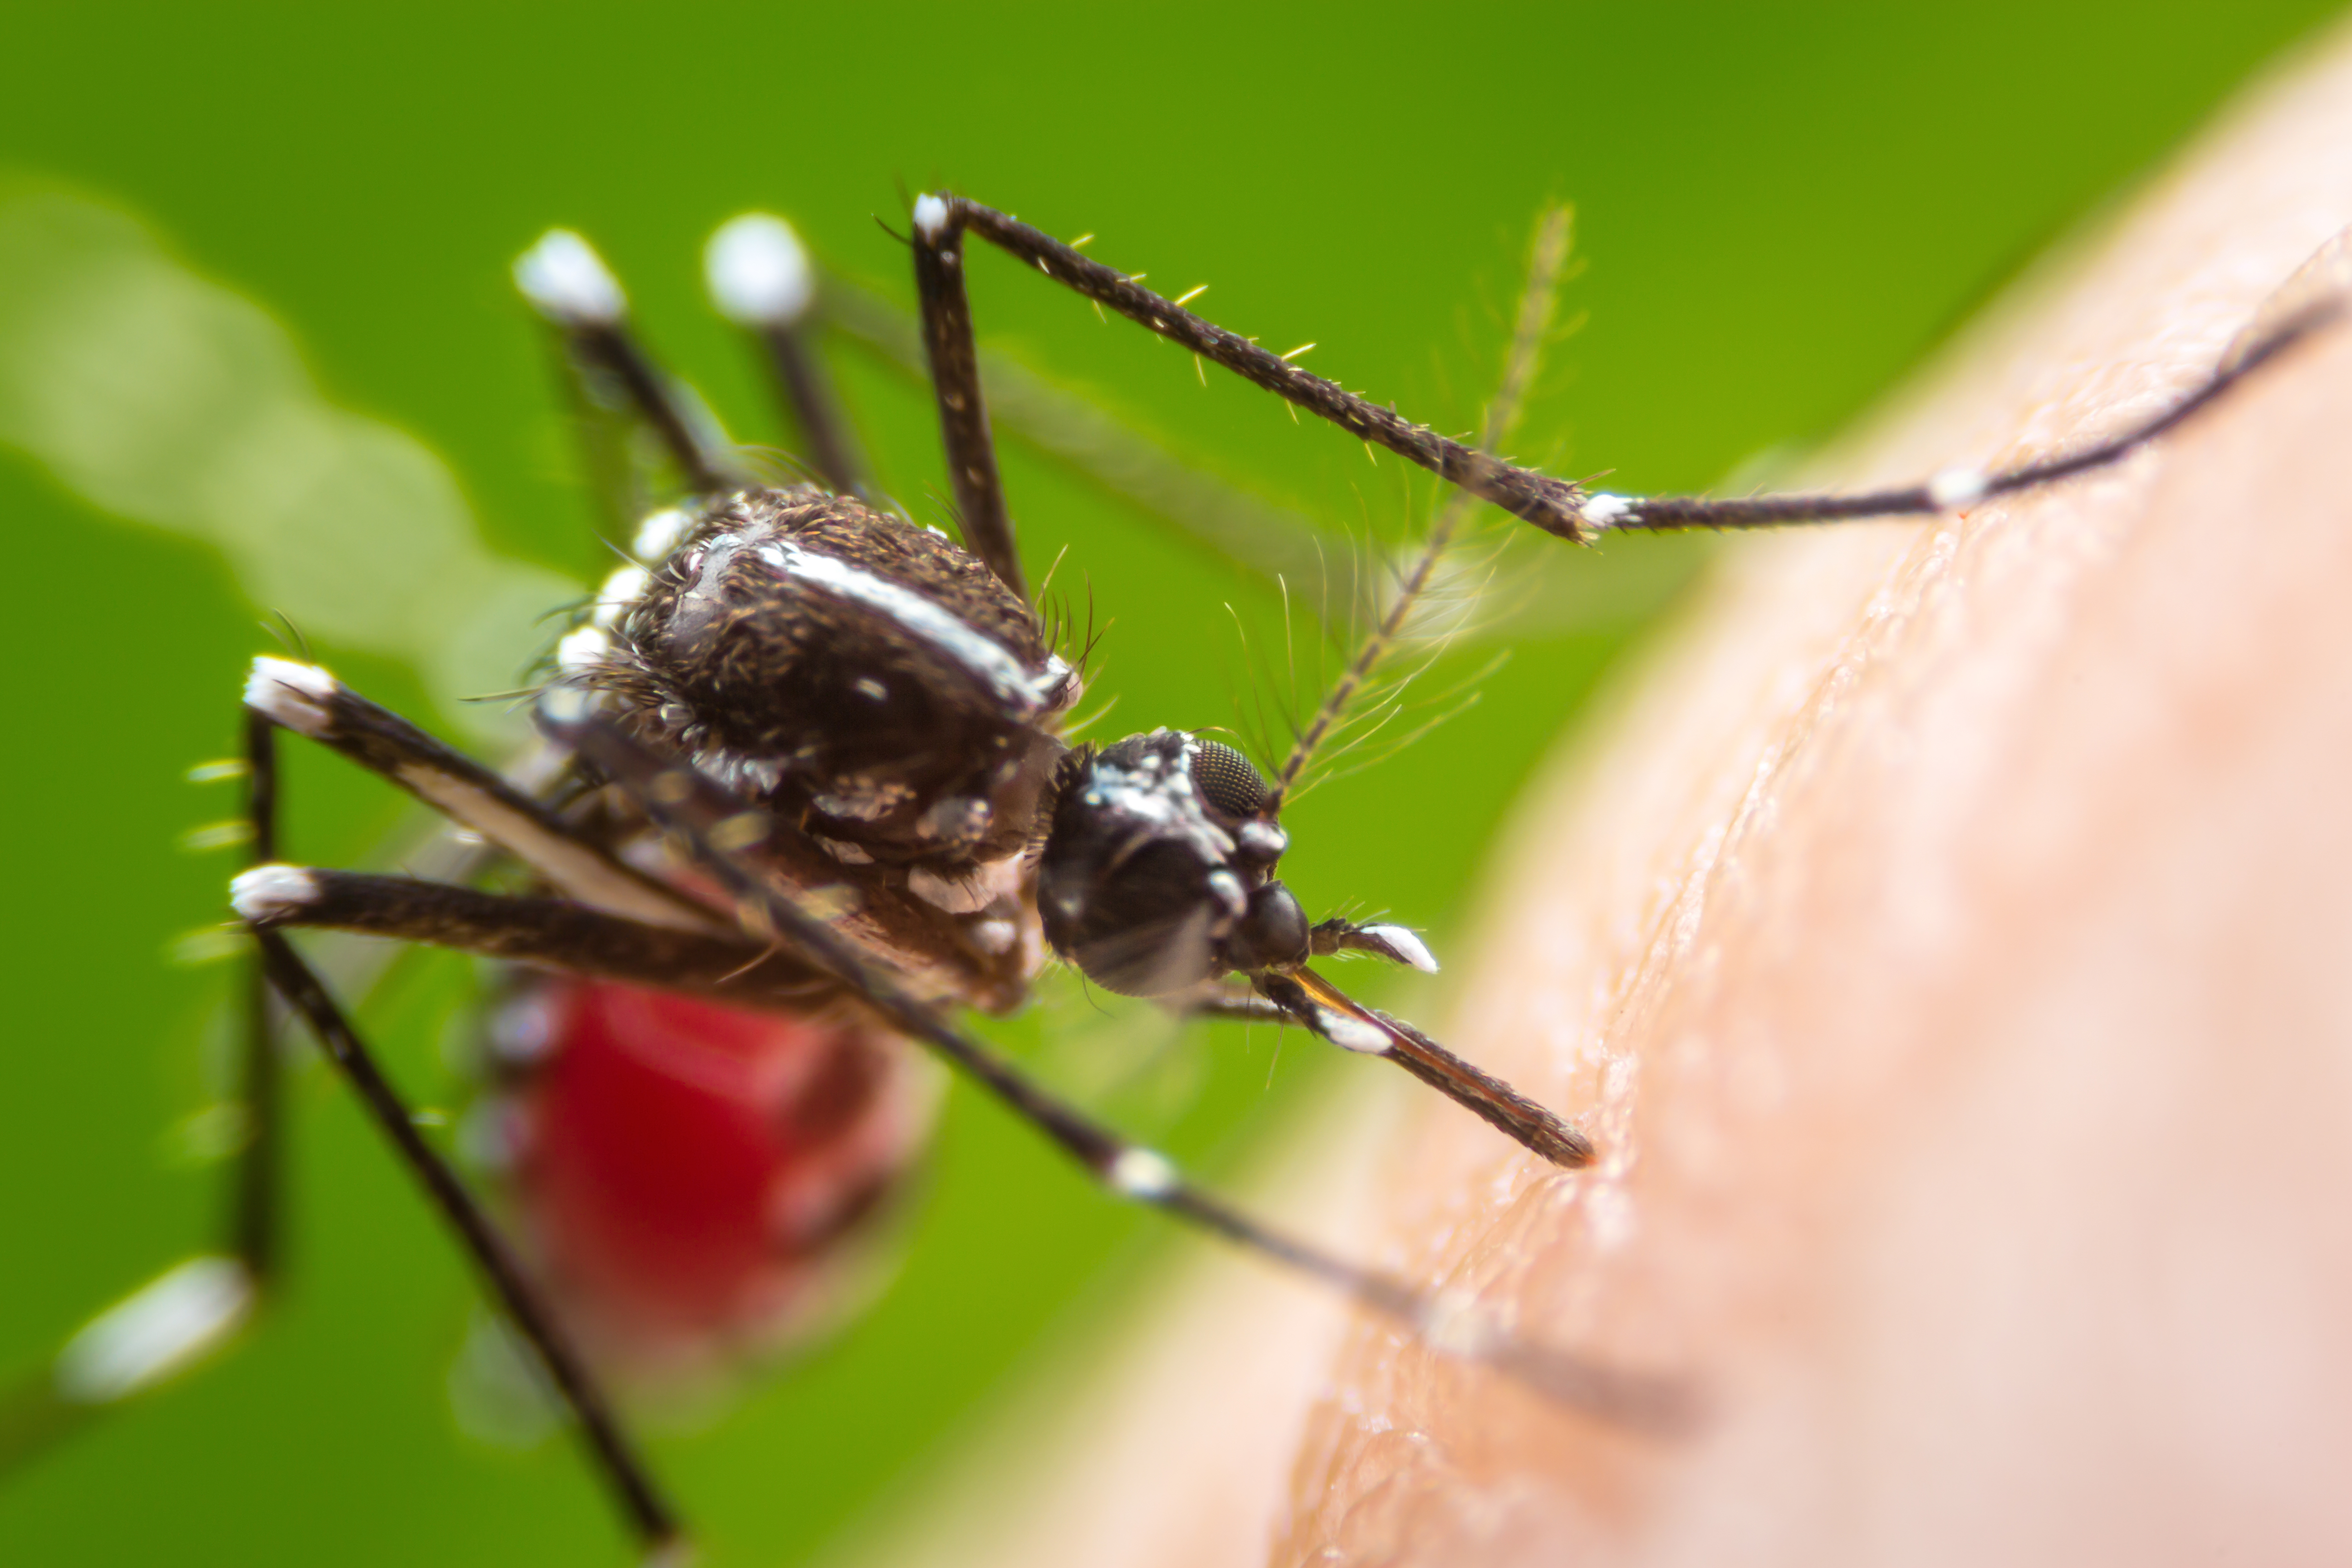     Les indicateurs de la dengue repartent à la hausse en Guadeloupe

